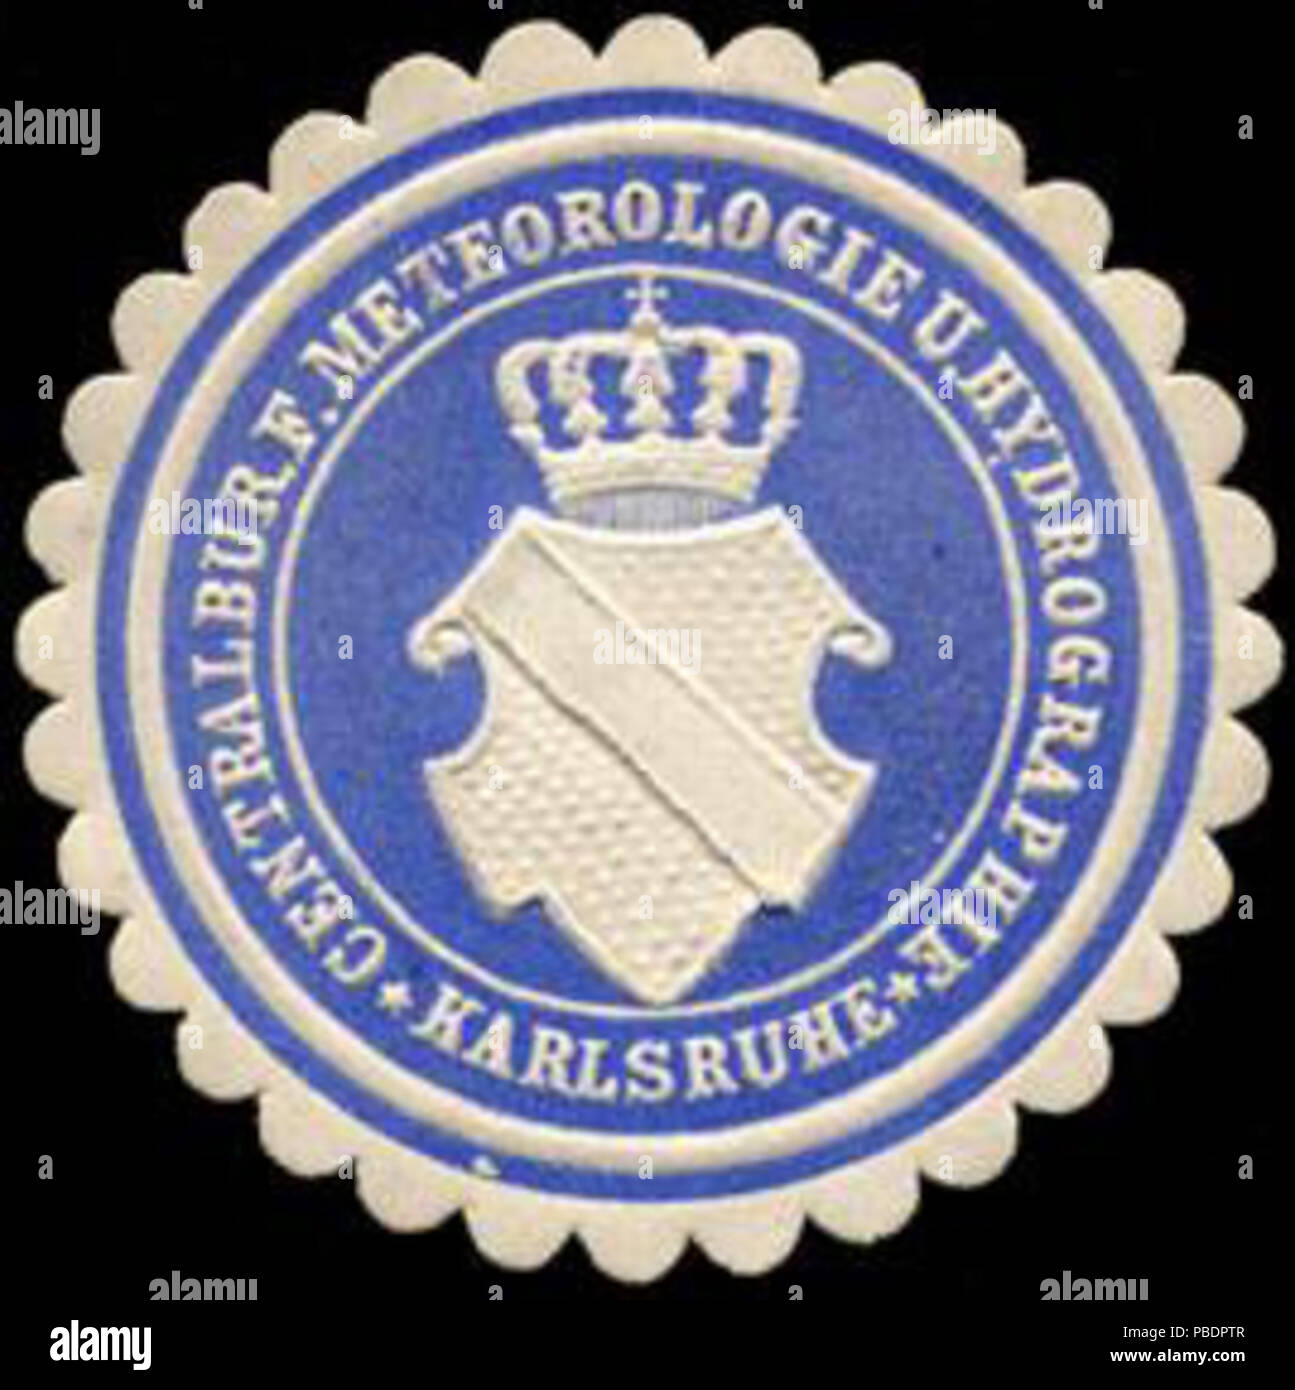 Alte Briefverschlussmarke aus Papier, welche seit ca. 1850 von Behoerden, Anwaelten, Notaren und Firmen zum verschliessen der Post verwendet wurde. 1333 Siegelmarke Centralbüro für Meteorologie und Hydrographie - Karlsruhe W0225911 Stock Photo